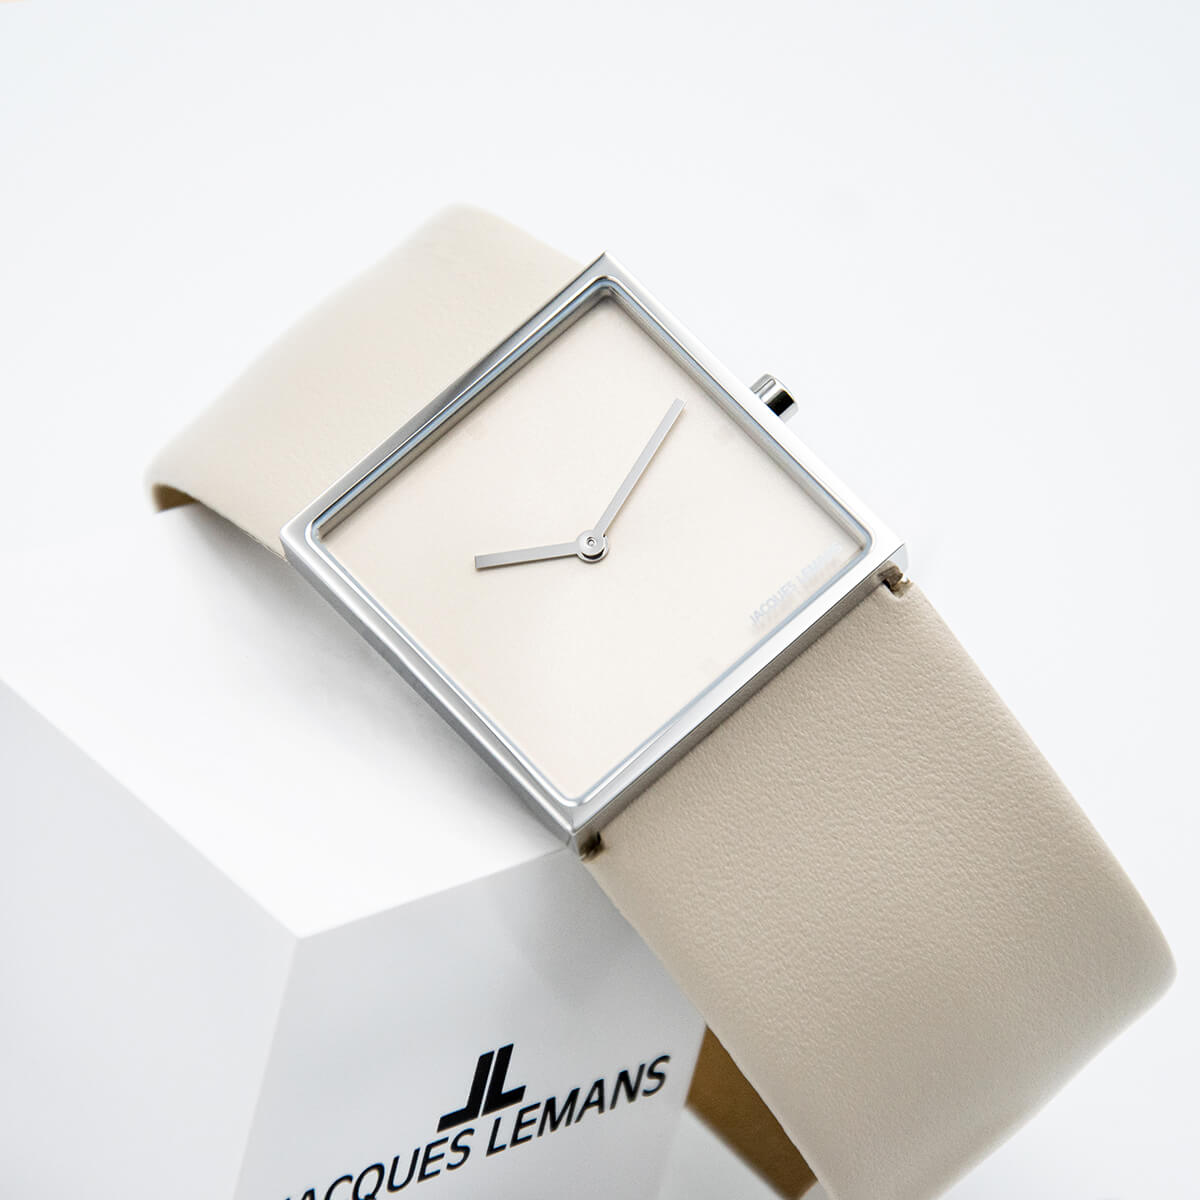 Часовник Jacques Lemans 1-2057M